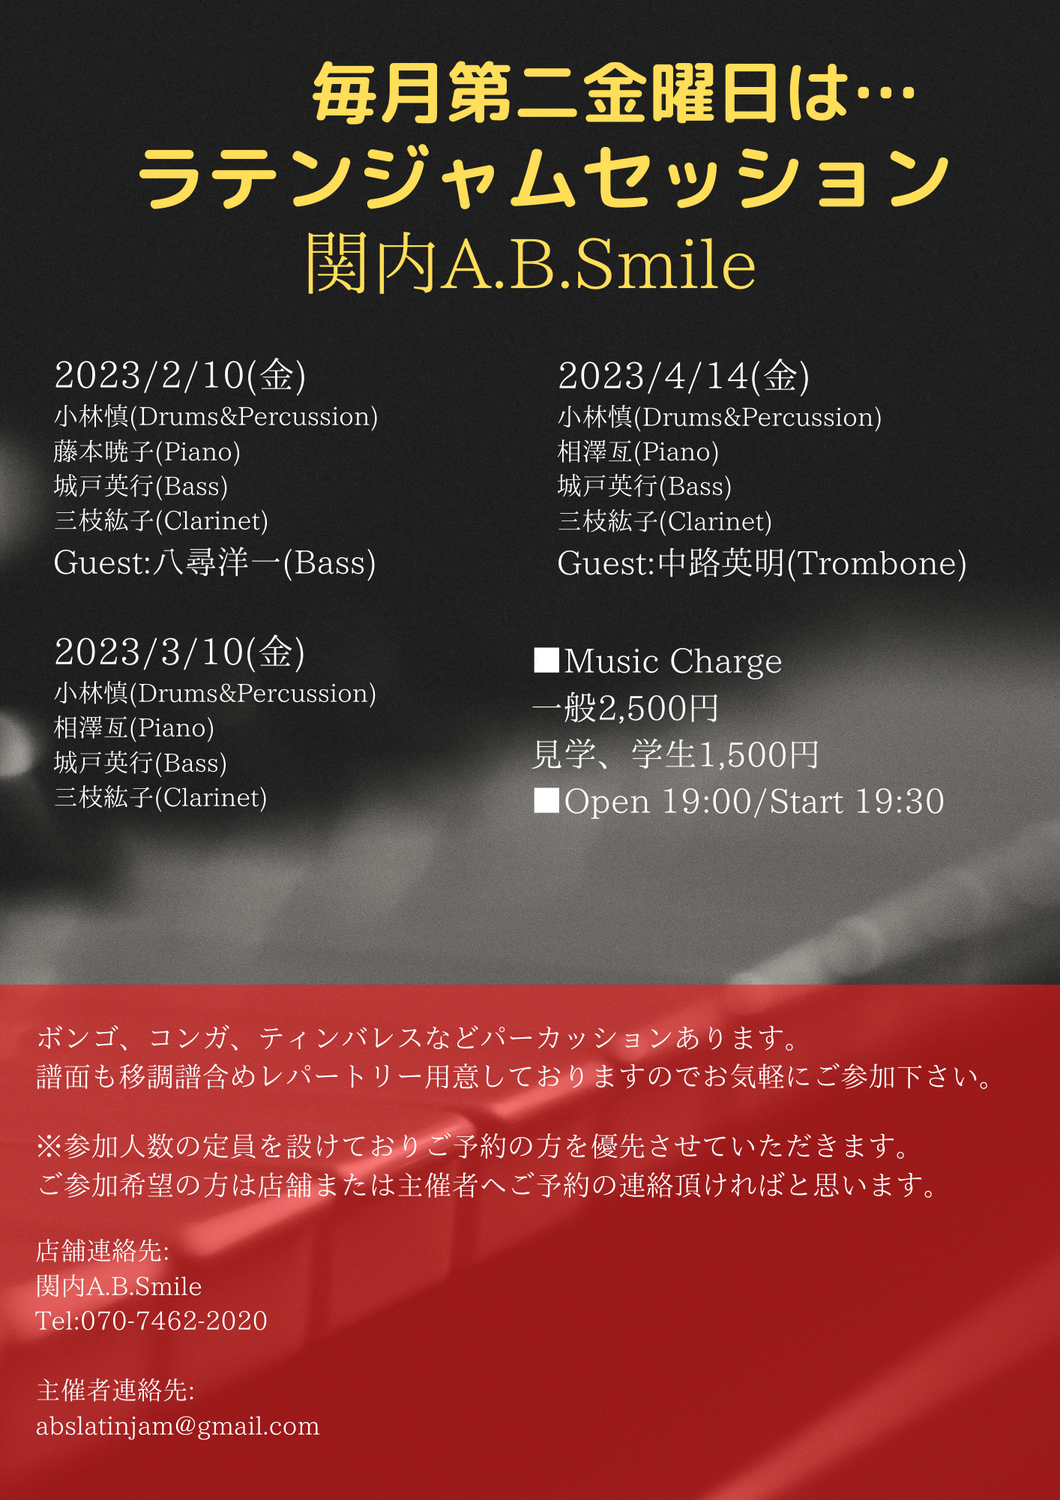 2023/4/14(金)「Latin Jam Session」 @ 関内A.B.Smile